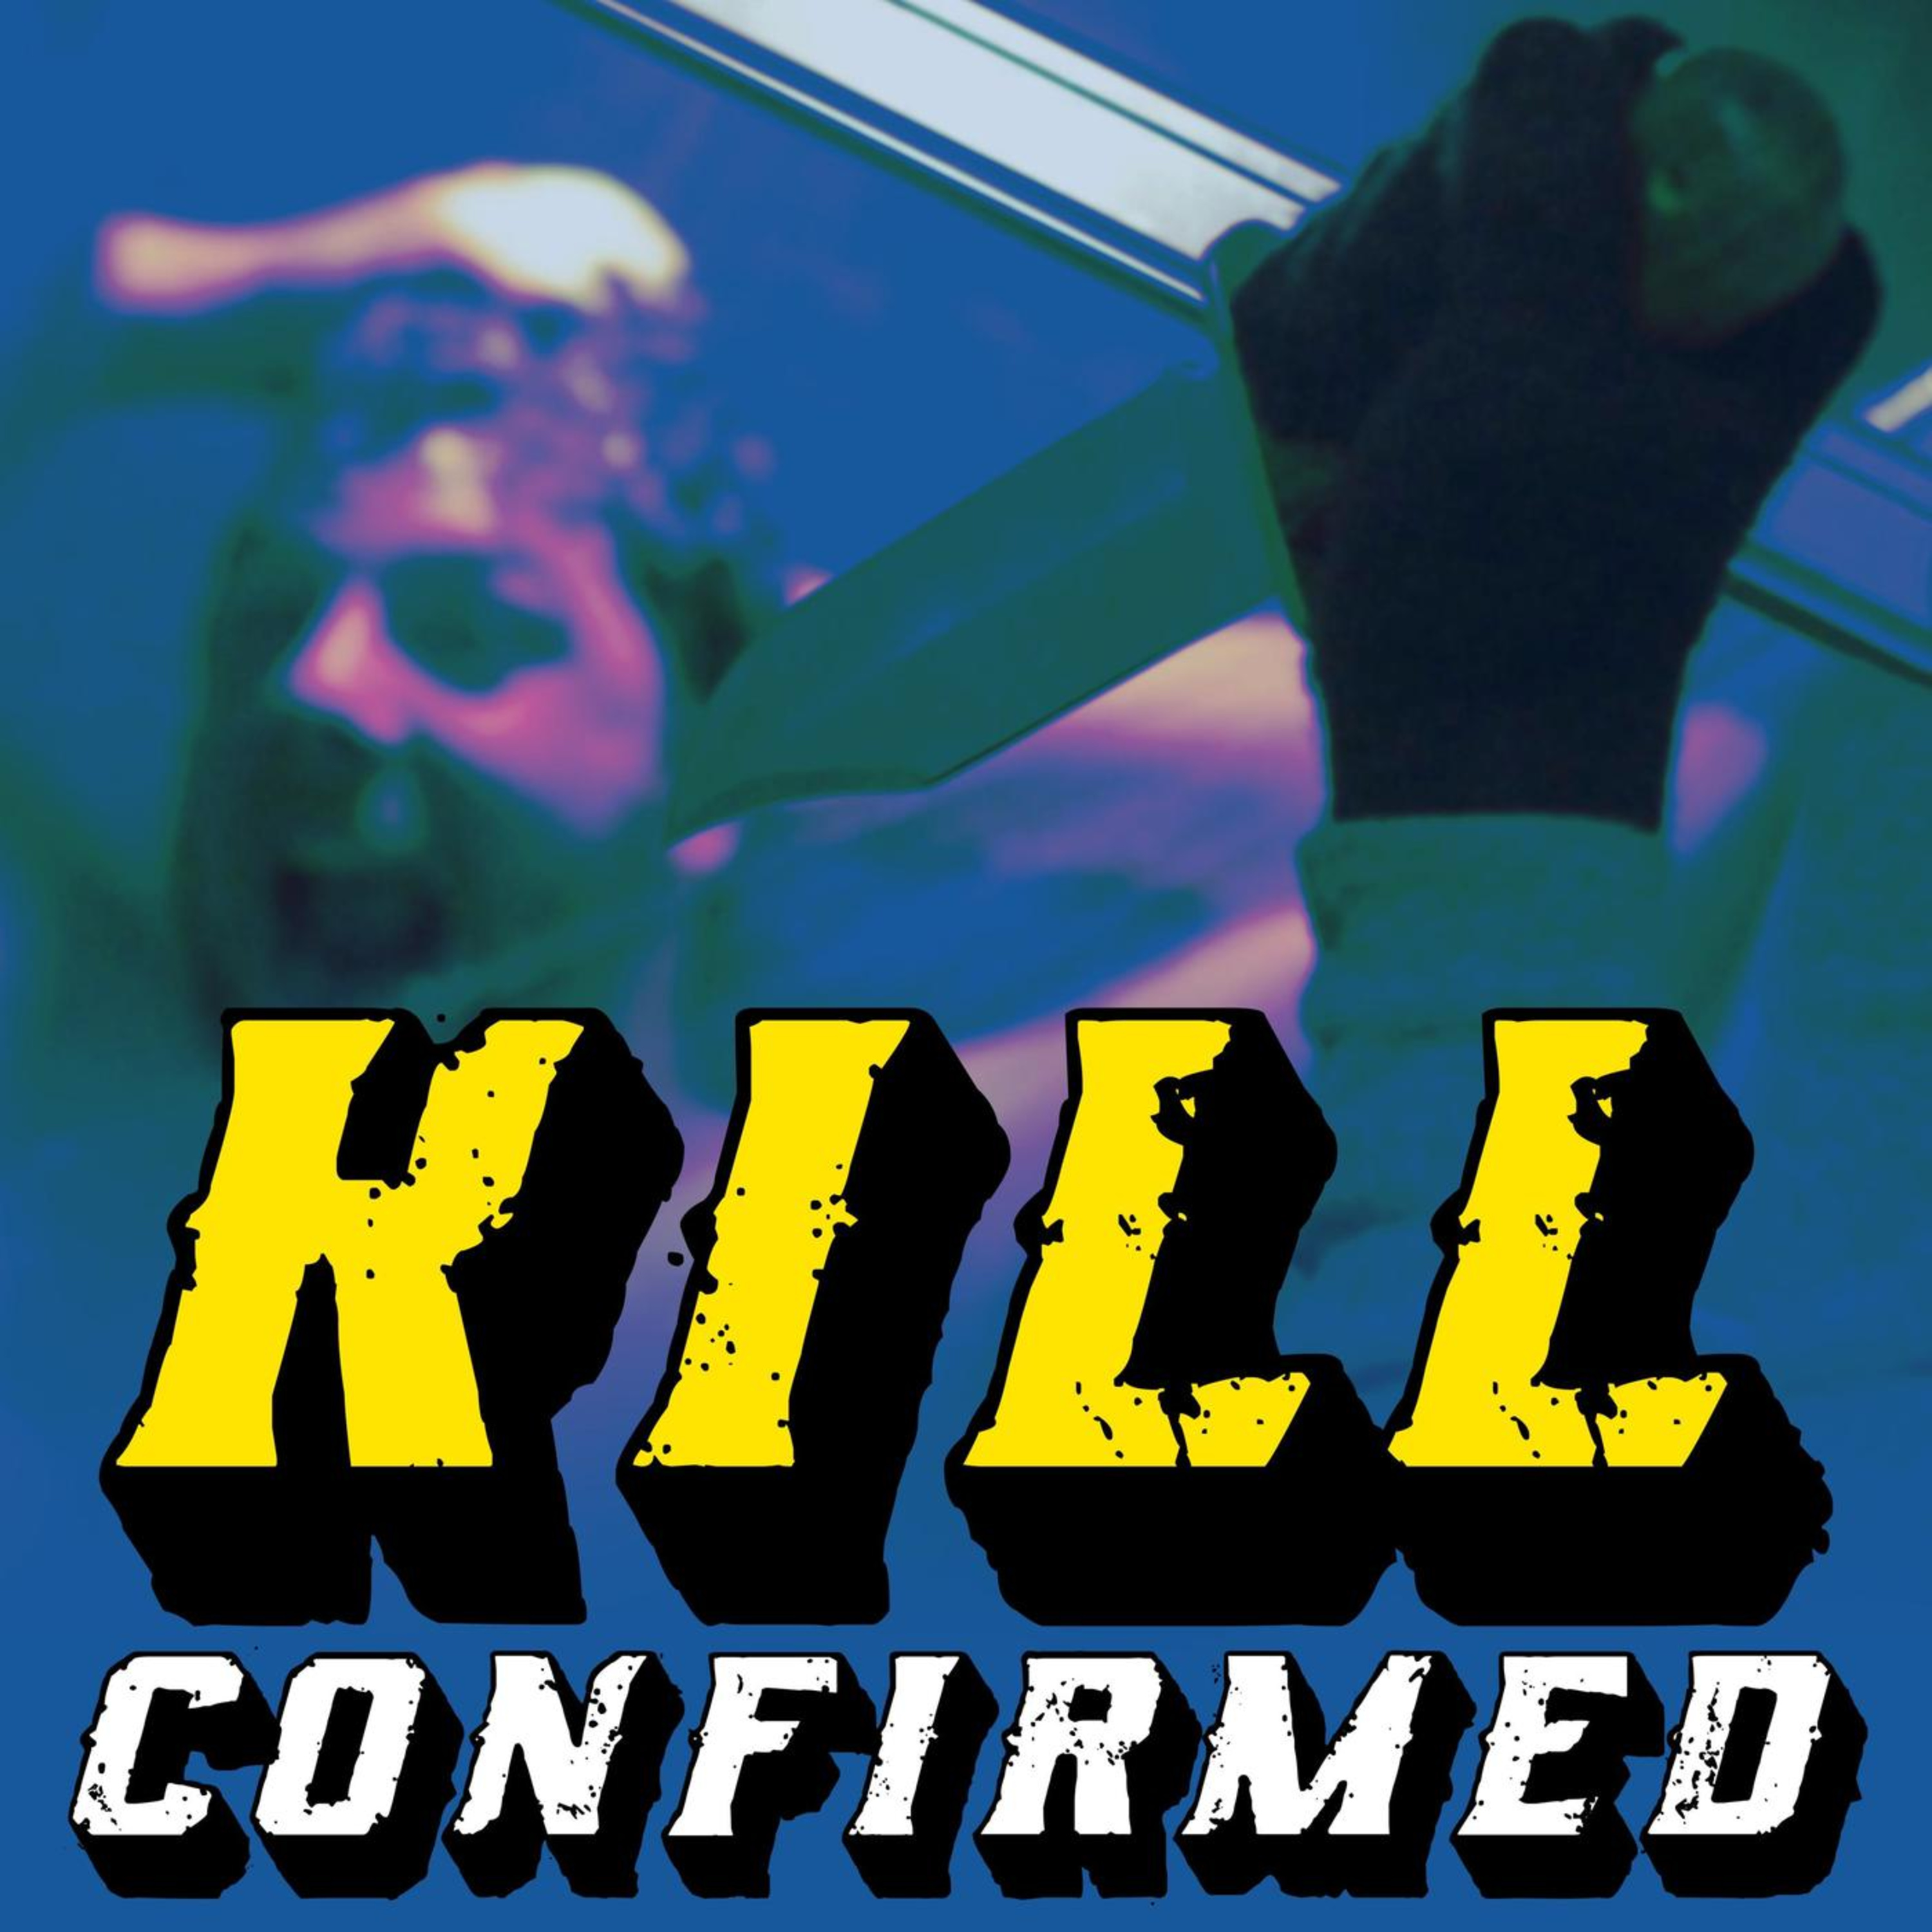 Kill Confirmed - Spider-man 3